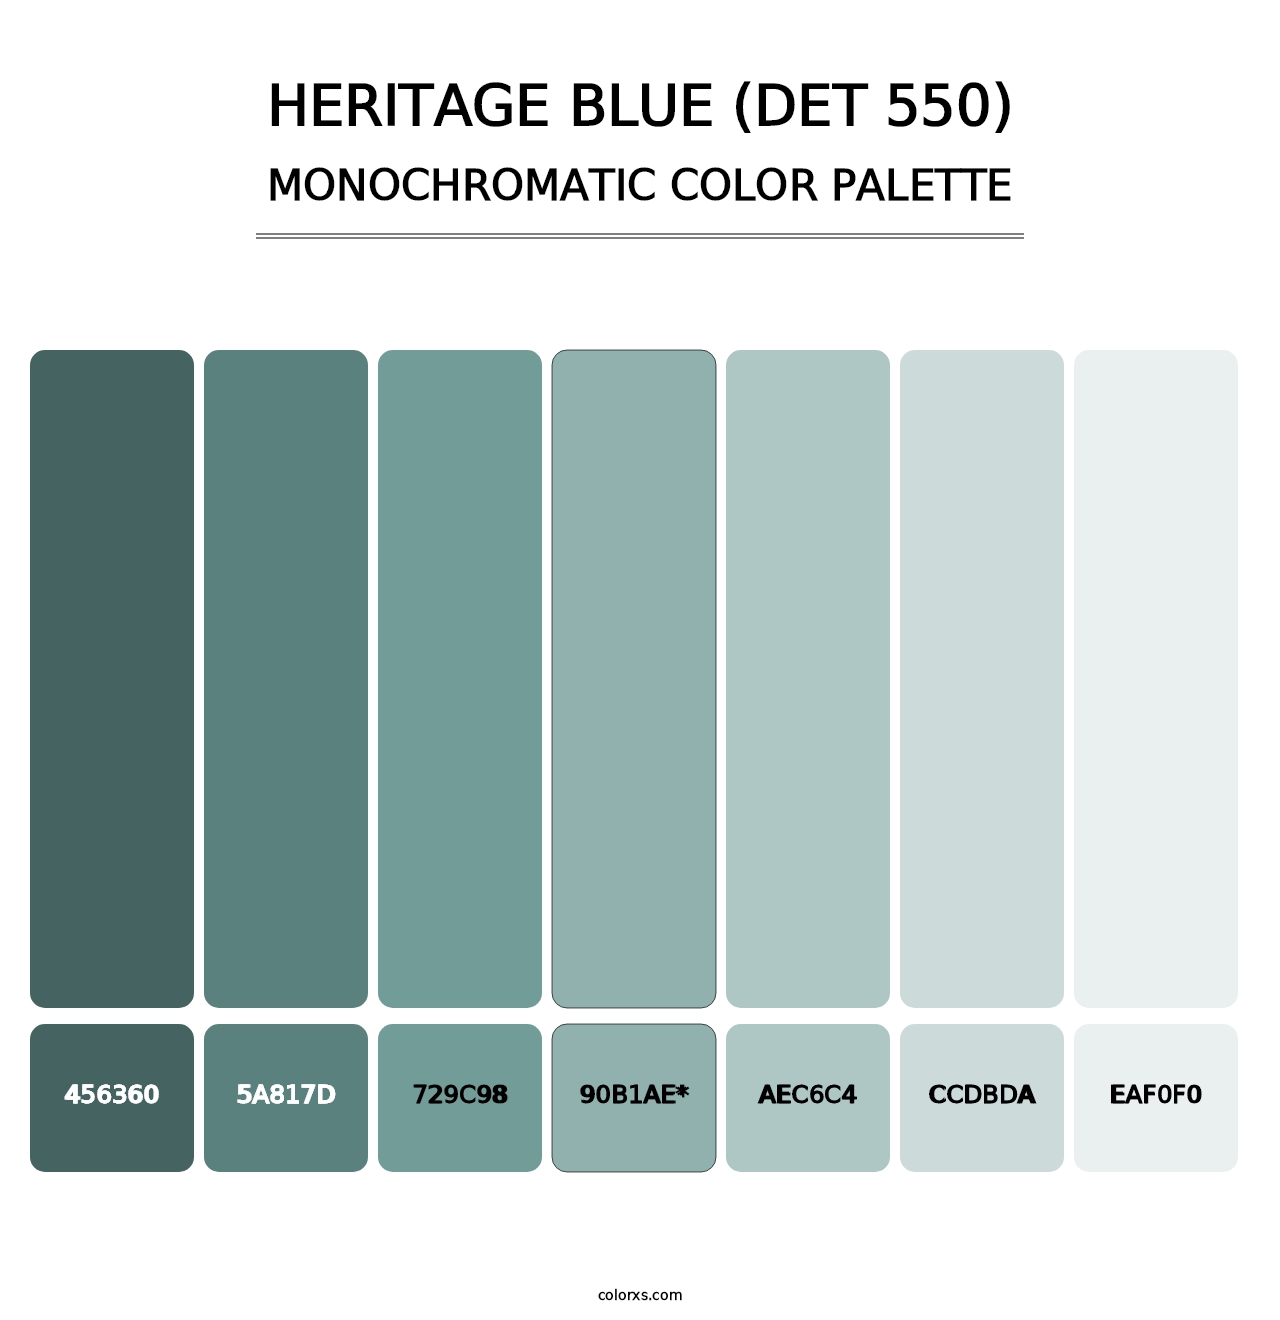 Heritage Blue (DET 550) - Monochromatic Color Palette